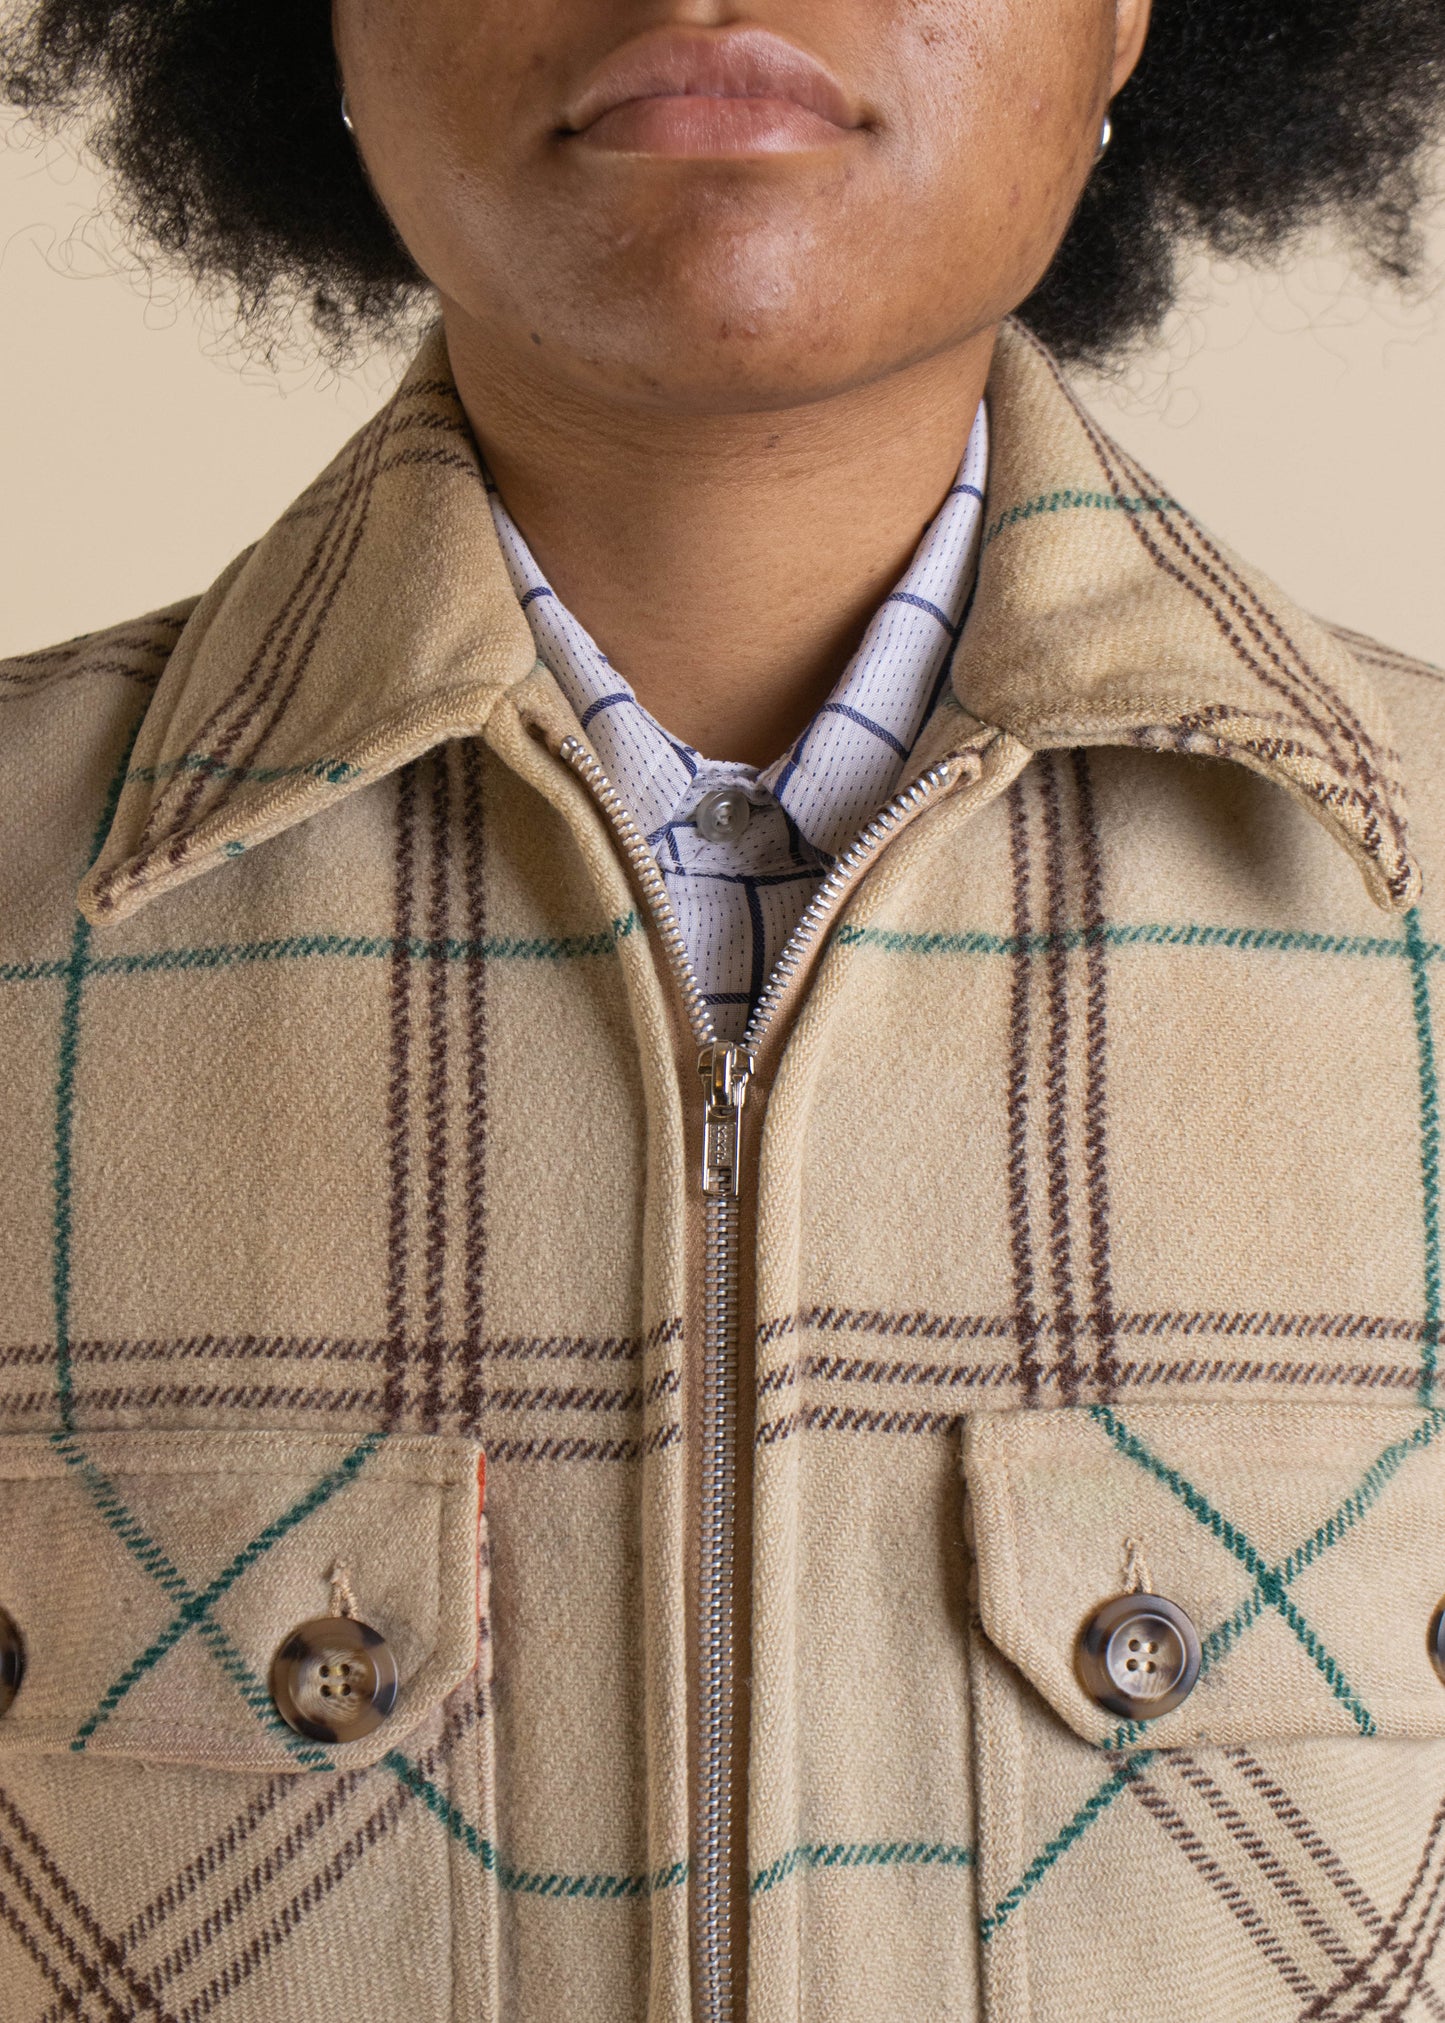 1970s Merrill Mac-Jac Flannel Wool Zip Up Jacket Size S/M